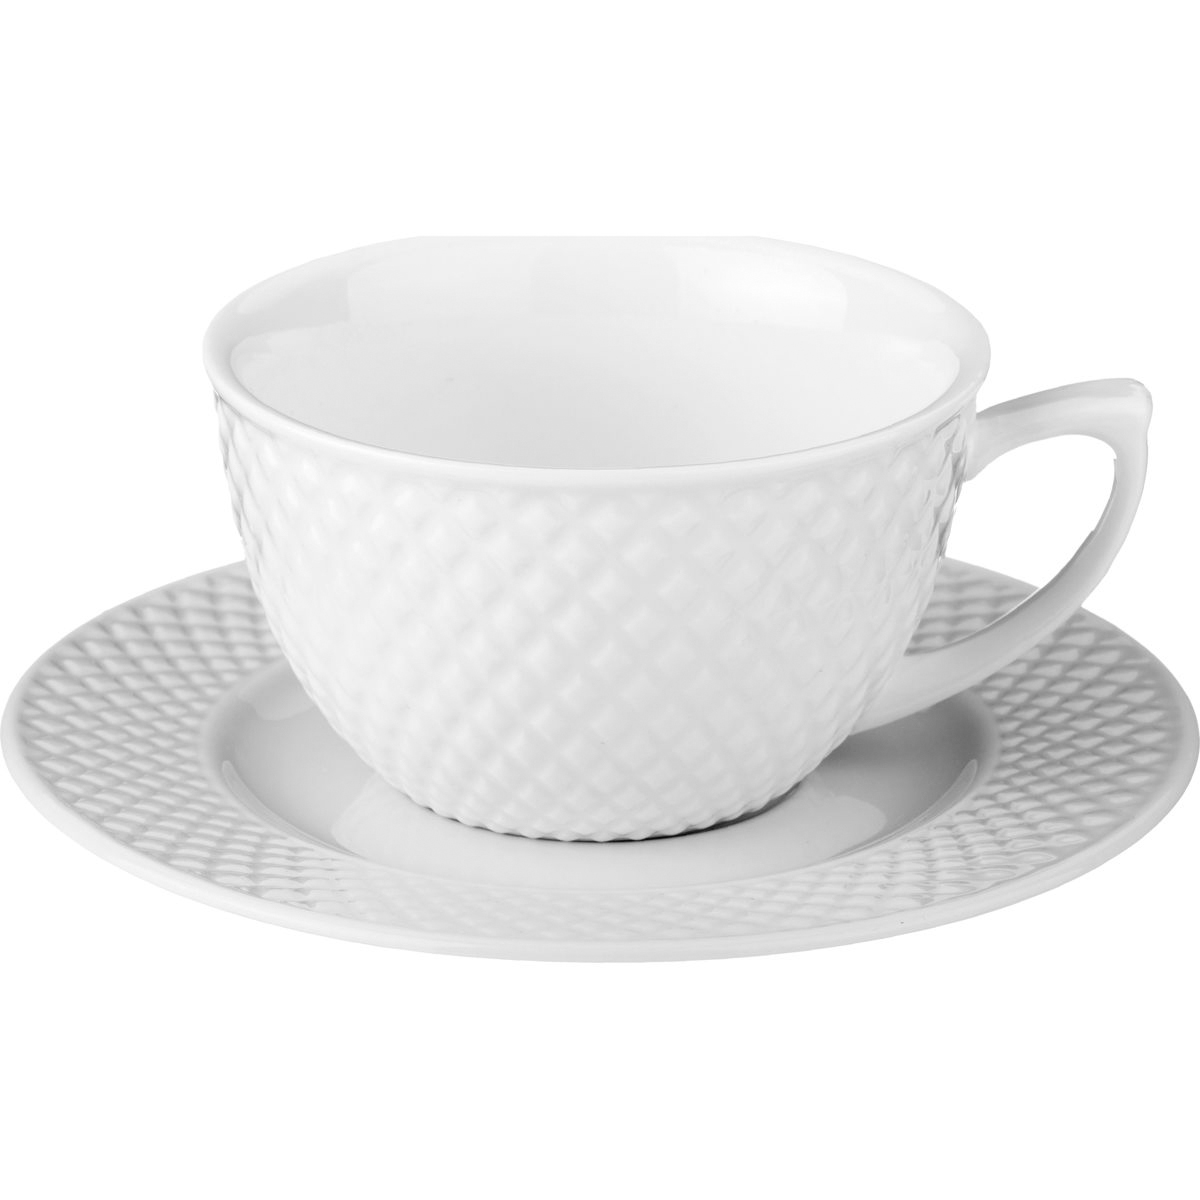 Чайный набор Диаманд (220 мл), размер 220 мл, цвет белый lfr391621 Чайный набор Диаманд (220 мл) - фото 1